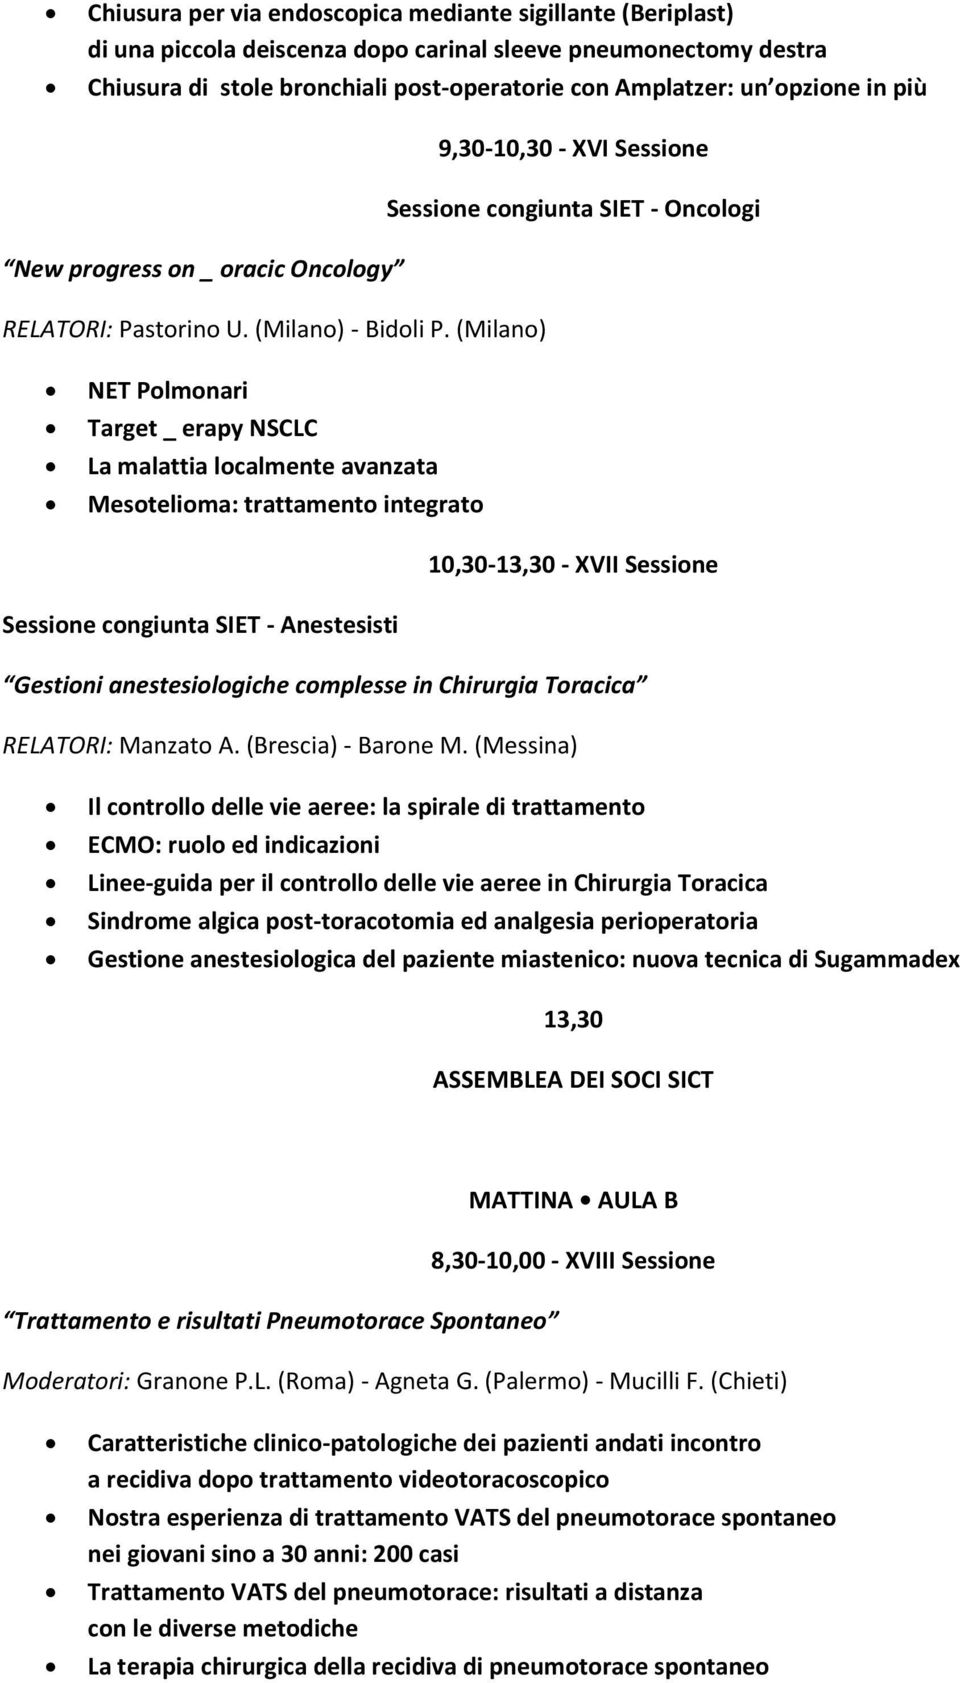 (Milano) NET Polmonari Target _ erapy NSCLC La malattia localmente avanzata Mesotelioma: trattamento integrato 10,30-13,30 - XVII Sessione Sessione congiunta SIET - Anestesisti Gestioni